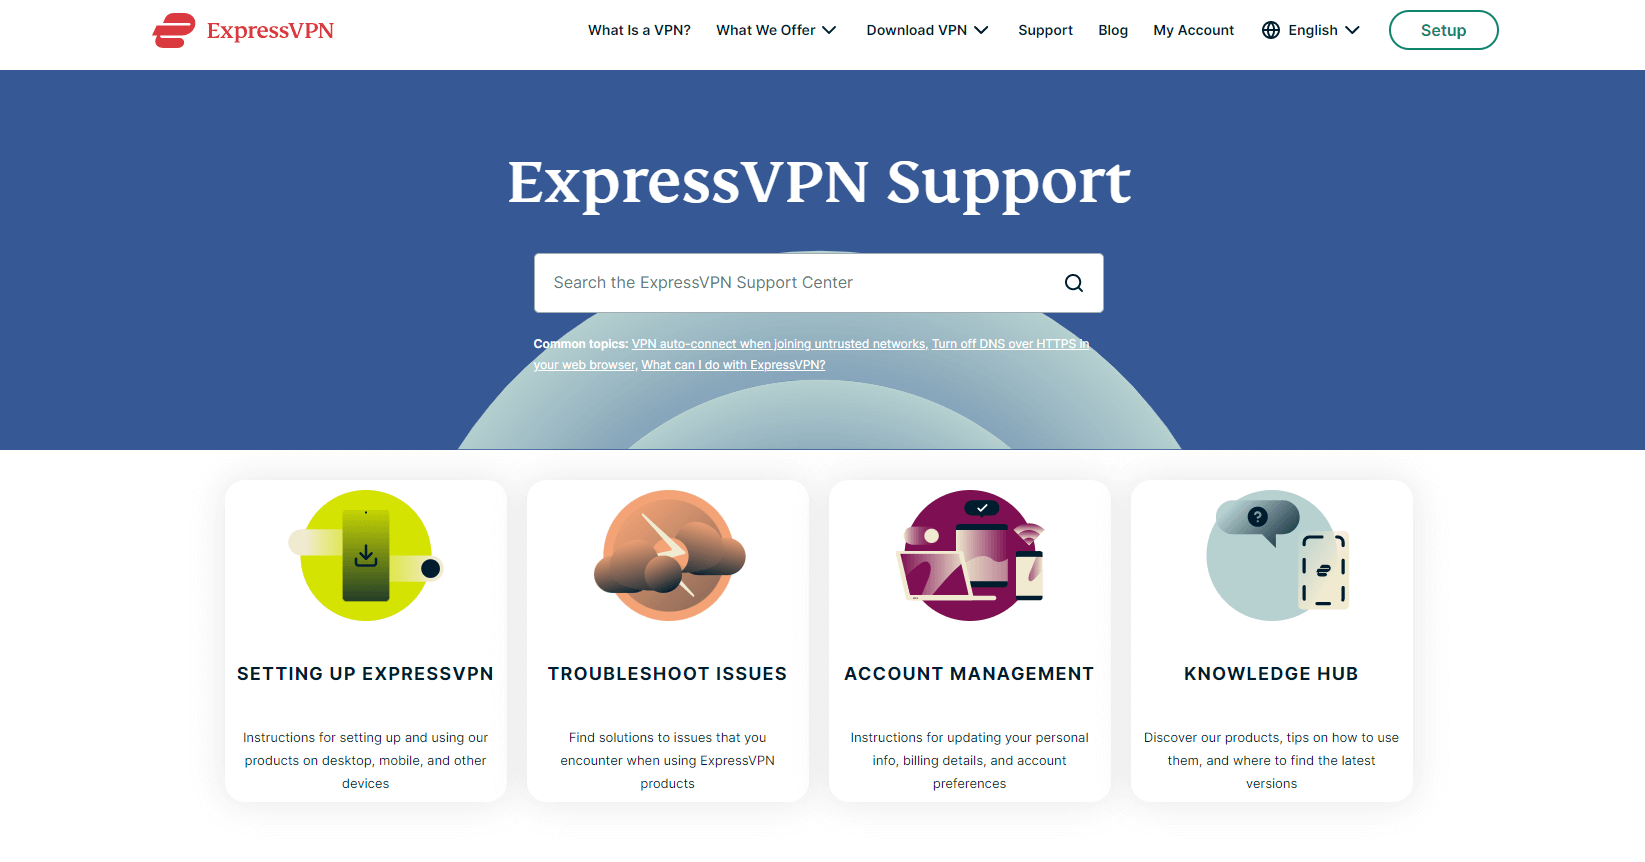  ExpressVPN-Support-Bereich in - Deutschland 